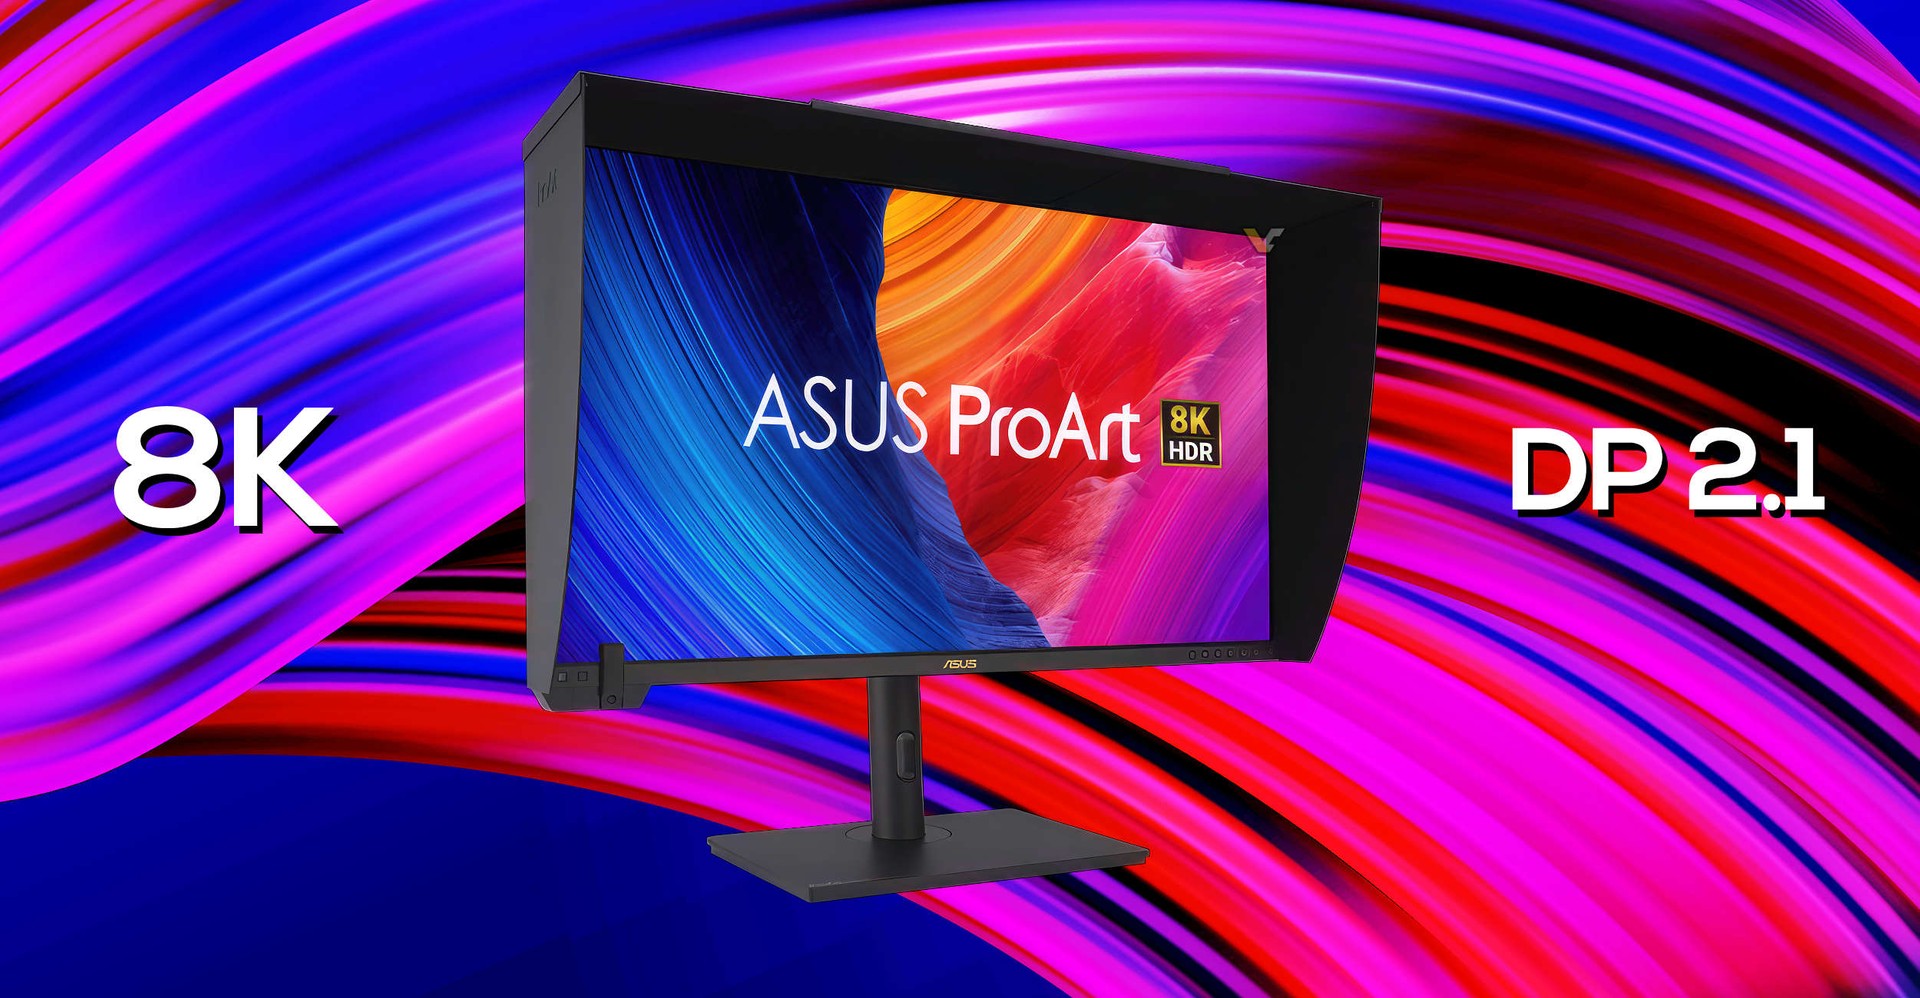 ASUS apresenta monitor ProArt com resolução 8K e DisplayPort 2.1 para profissionais - TudoCelular.com